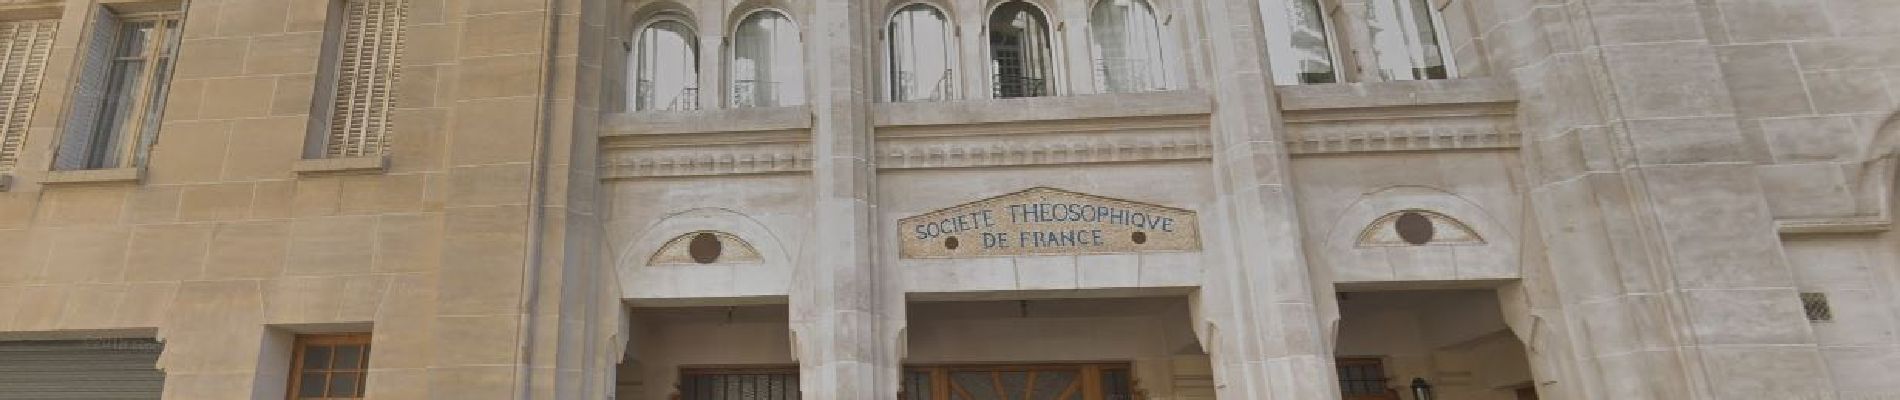 POI Parijs - Immeuble de la societé Théosophique de France - Photo